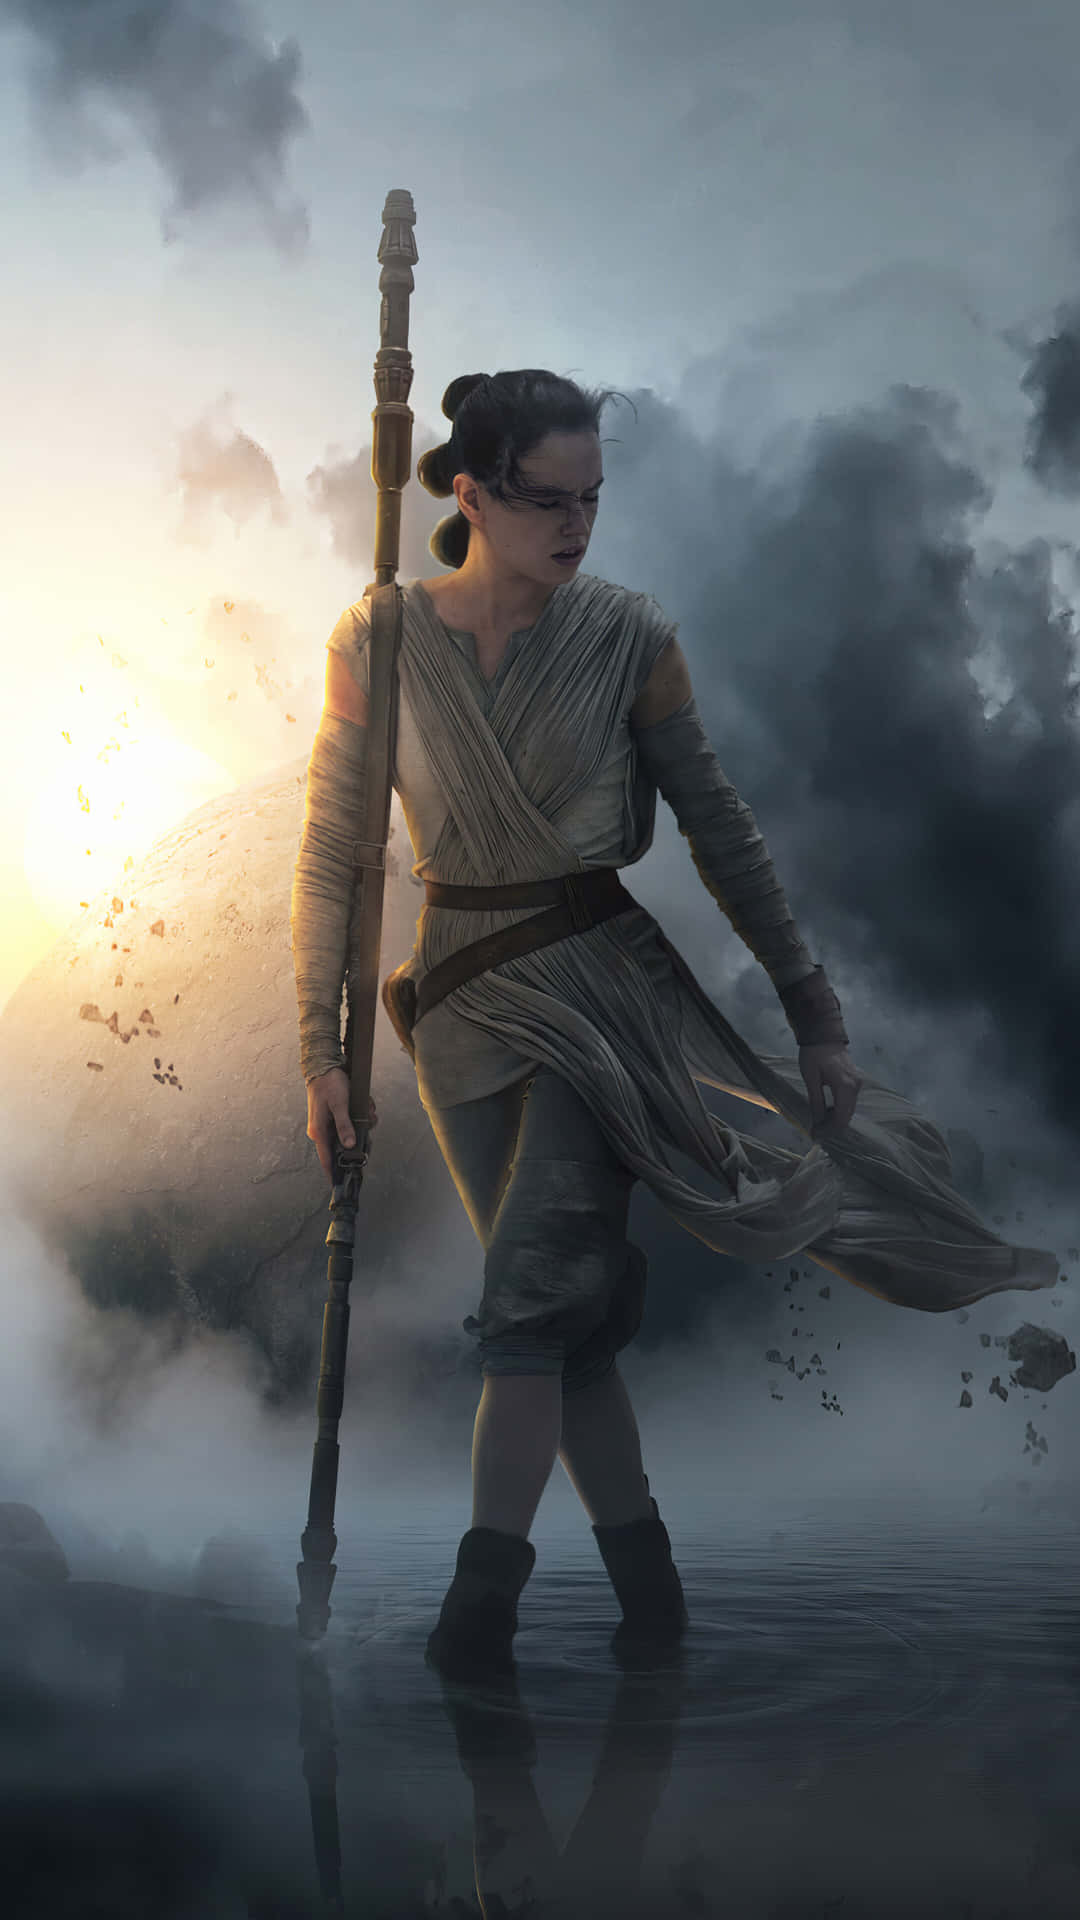 Denne wallpaper viser Rey, en Force-bruger fra Star Wars, med et Lightsaber. Wallpaper